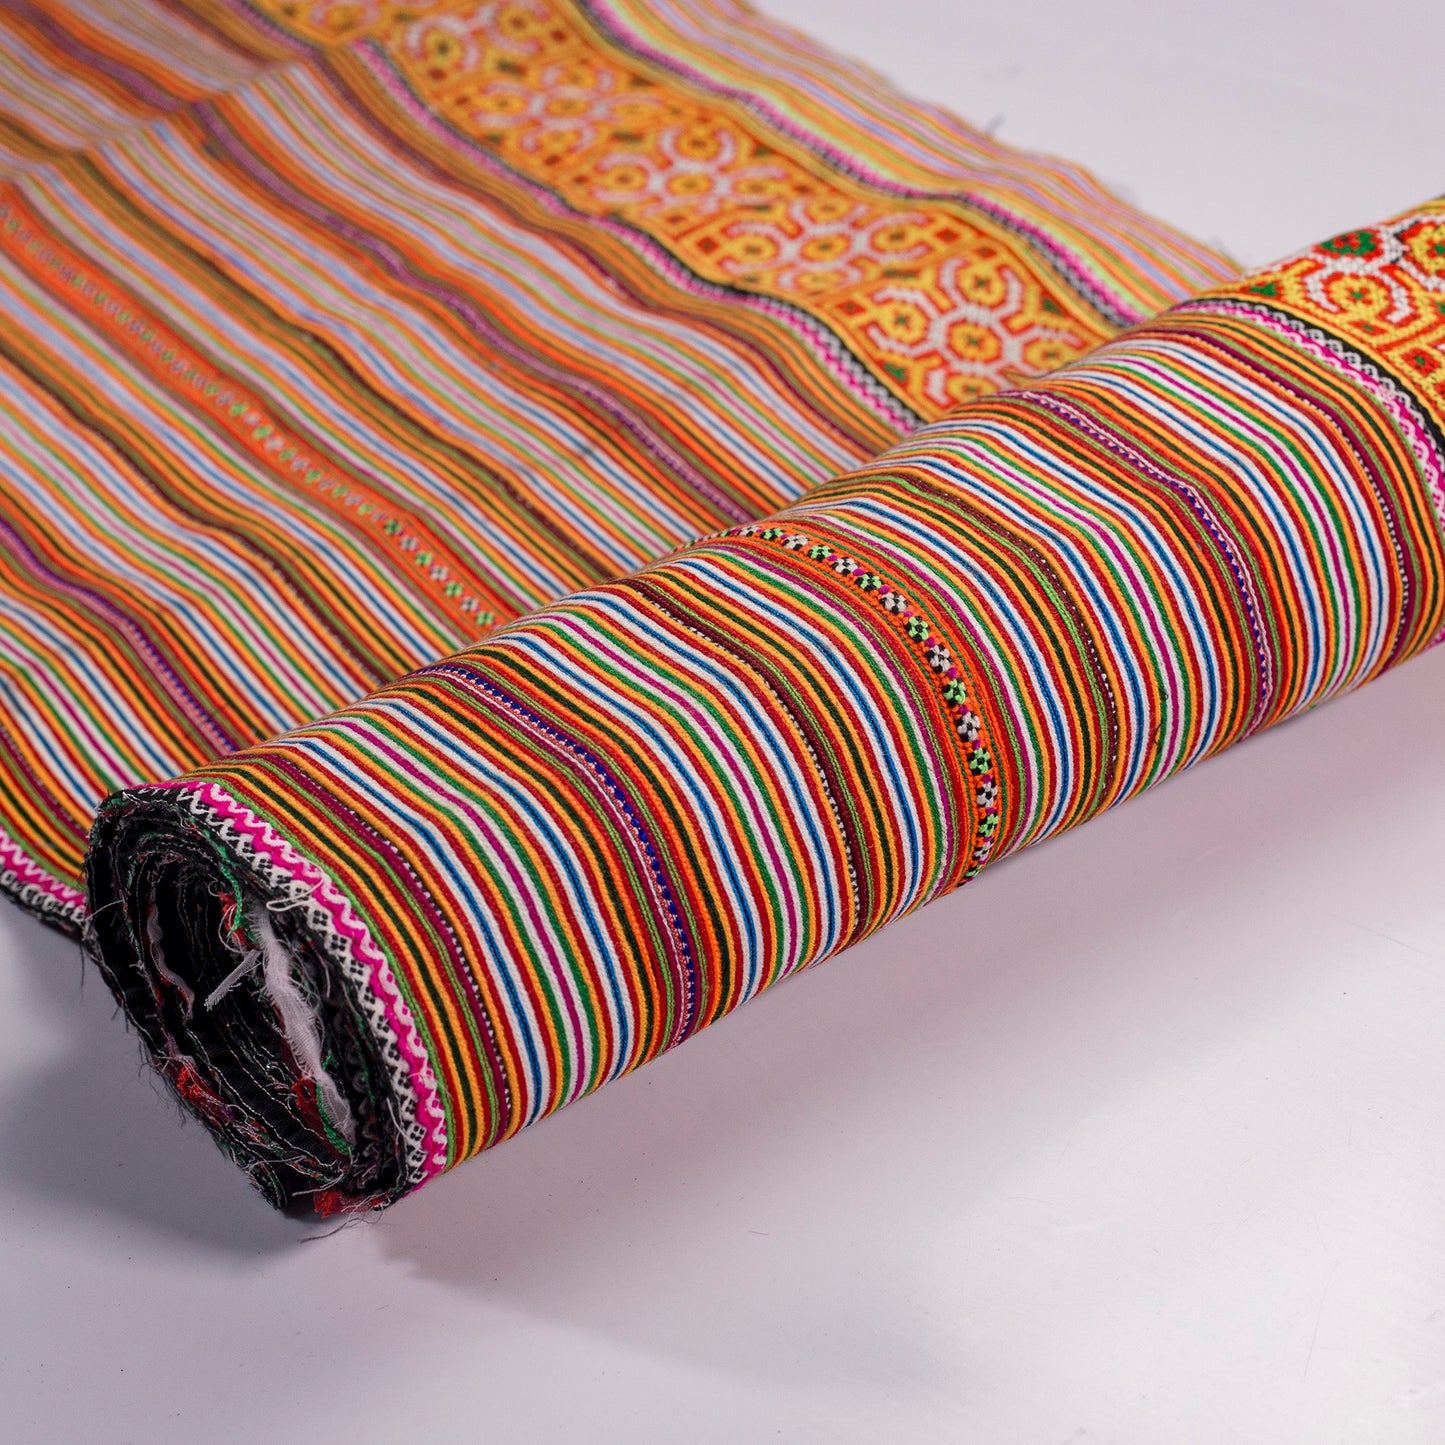 Hand embroidery fabrics, orange cross-stitched fabrics, H'Mong pattern